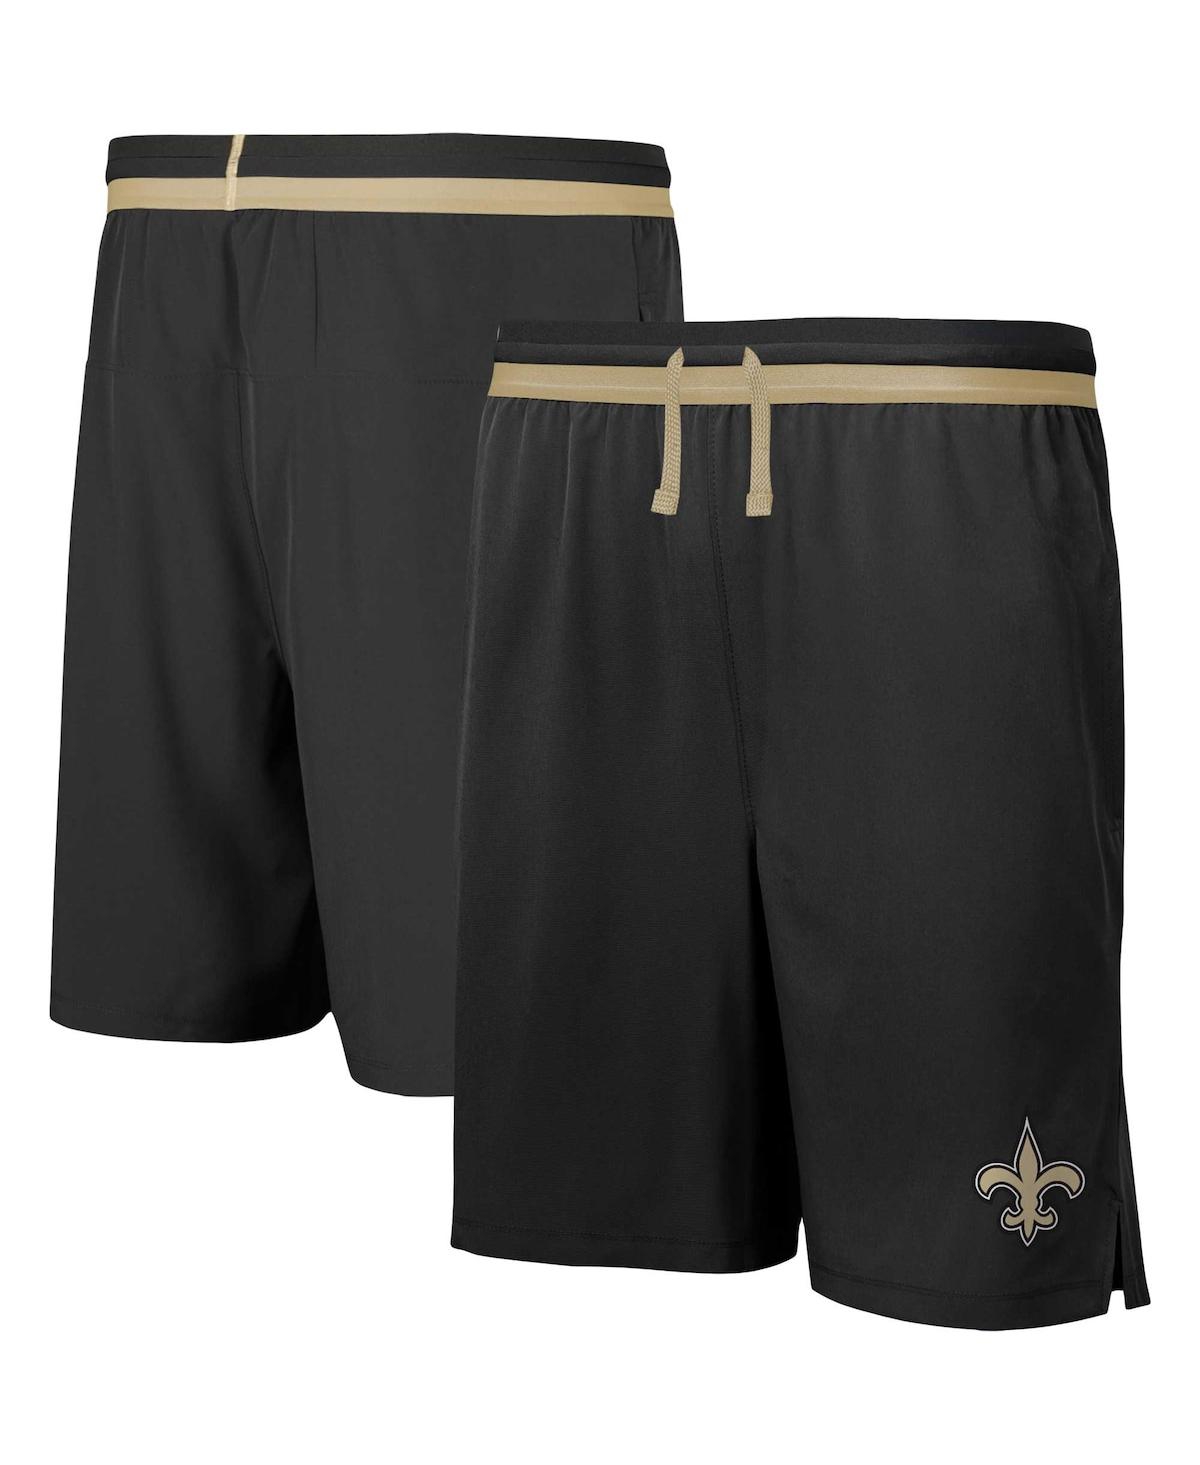 Outerstuff Men's Black New Orleans Saints Cool Down Tri-color Elastic Training Shorts